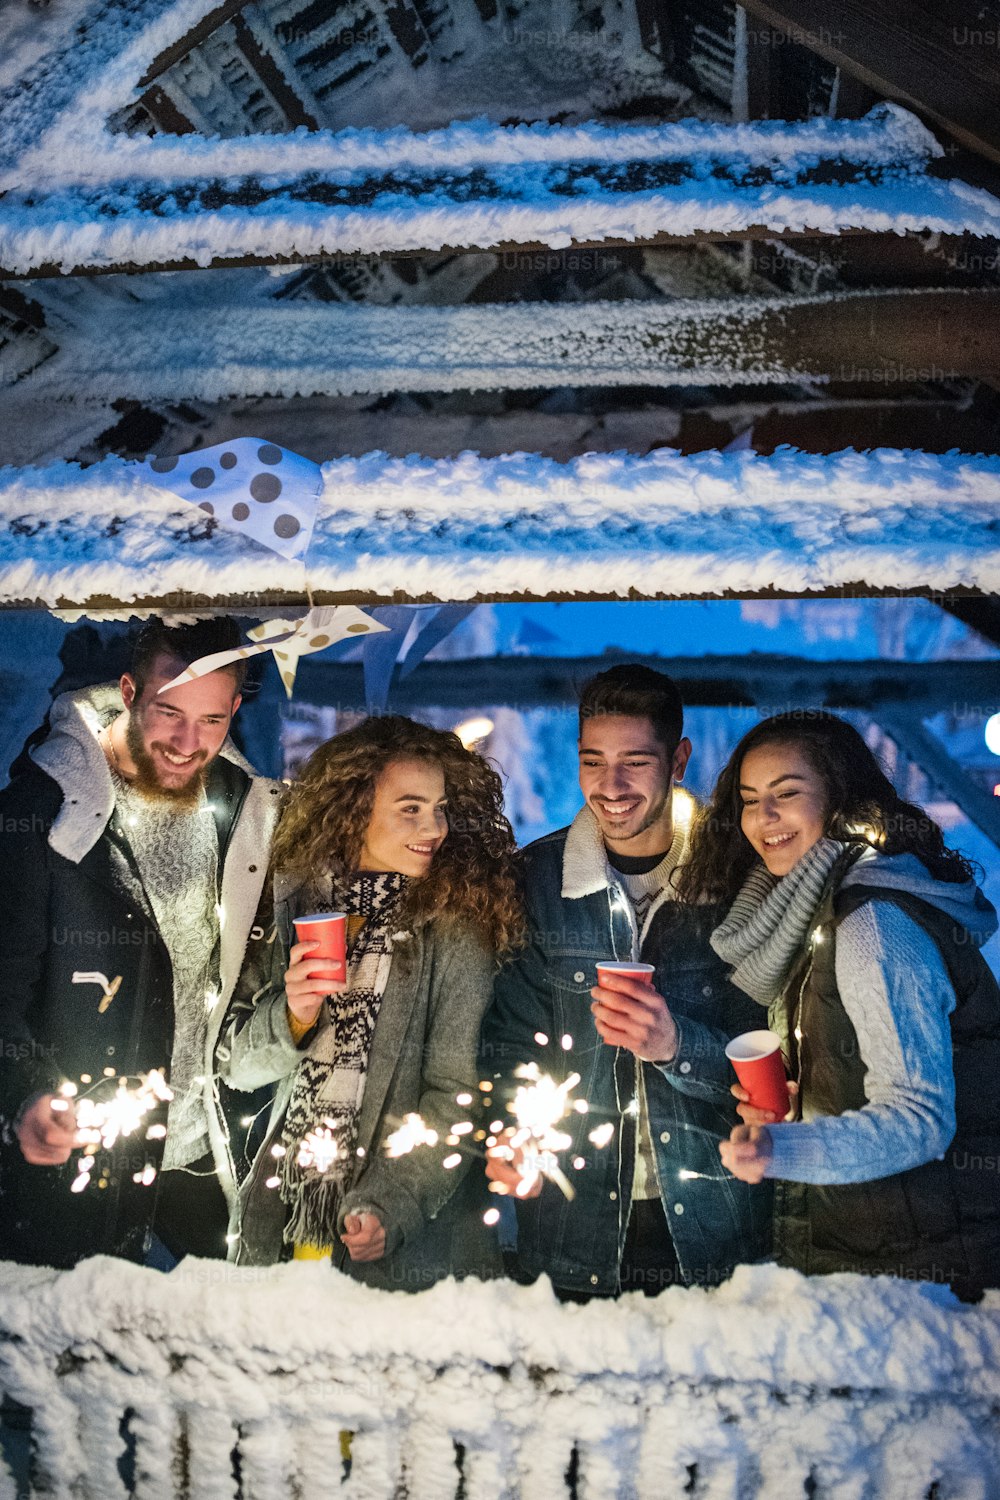 Un groupe de jeunes amis à l’extérieur dans la neige en hiver la nuit, tenant des cierges magiques.